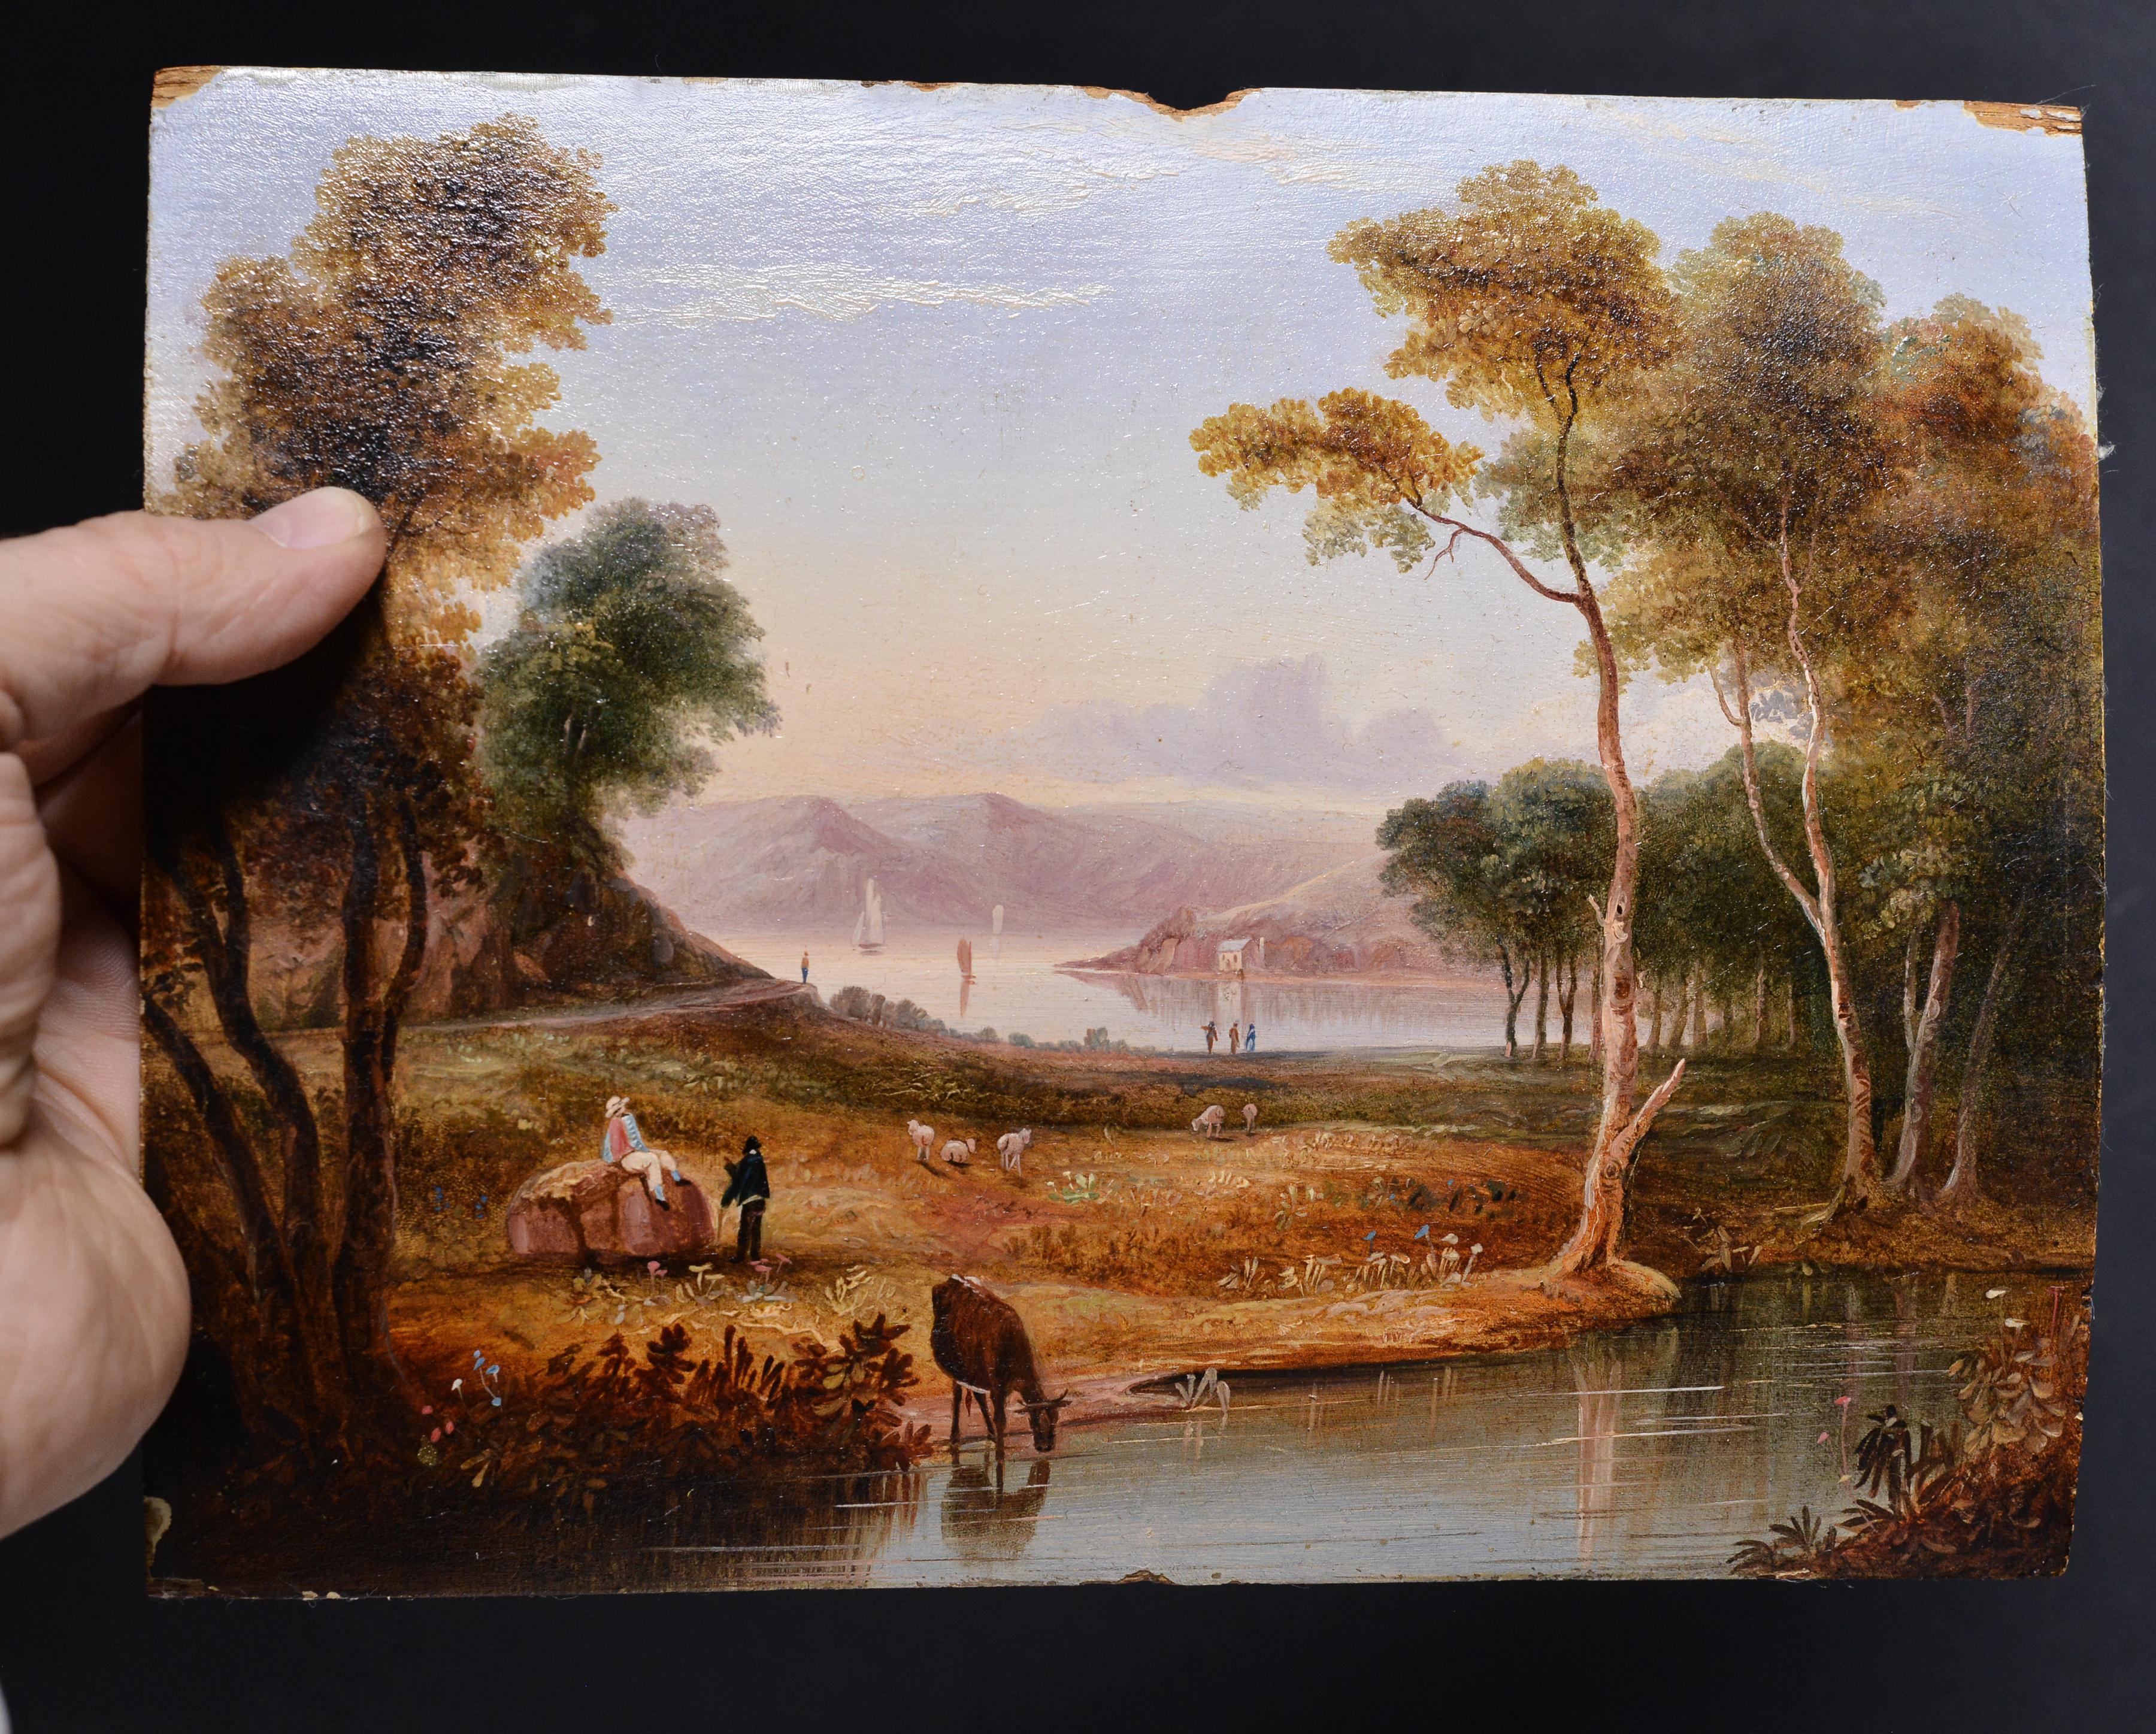 Paysage pastoral avec une vallée fluviale lointaine dans la brume, un troupeau, du bétail s'abreuvant et des personnages au premier plan légèrement boisé - Scène idyllique peinte à l'huile par un artiste professionnel inconnu du milieu du XIXe